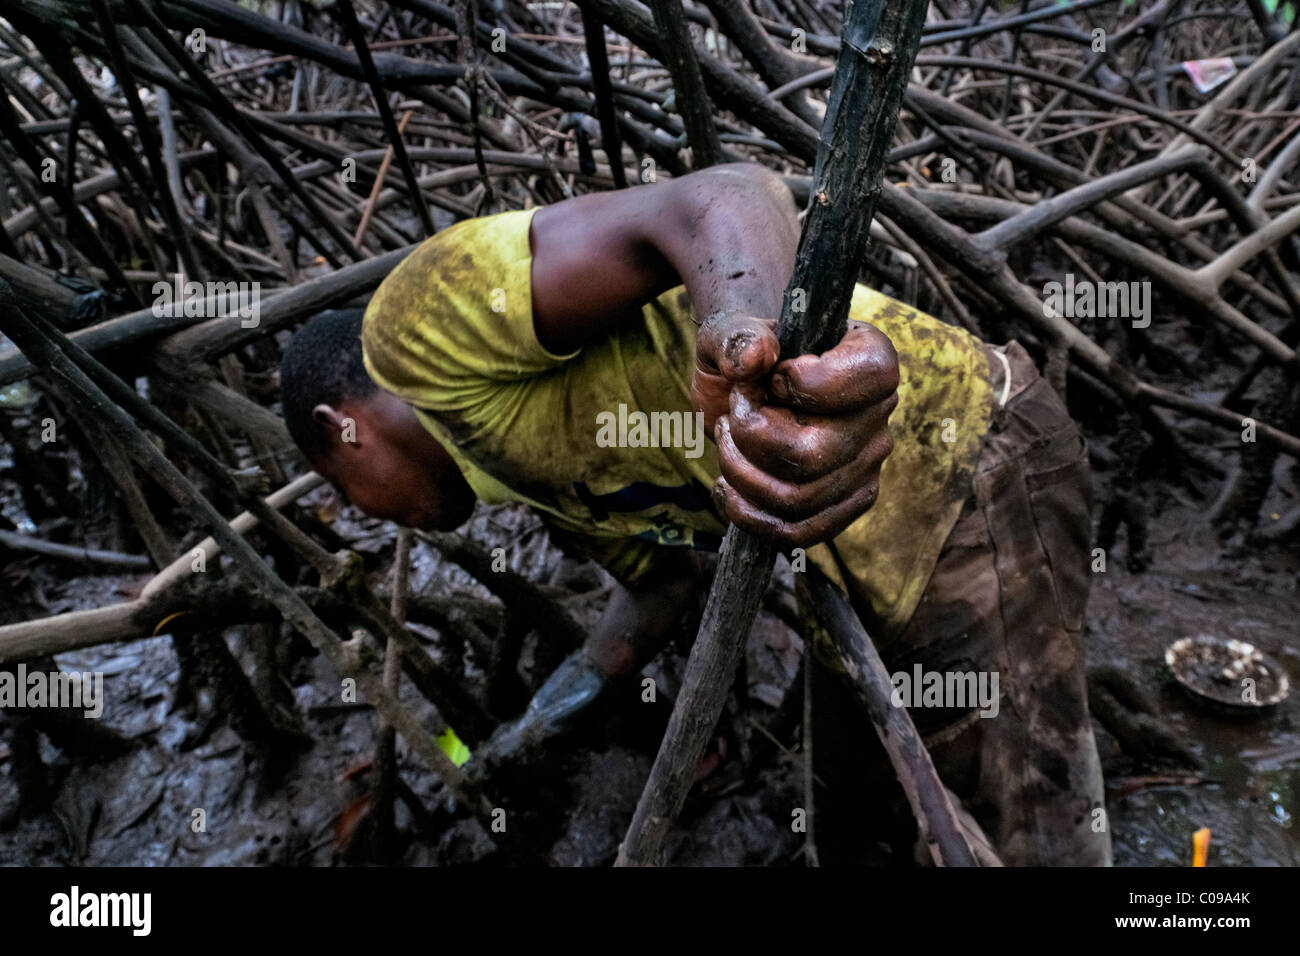 Ein kolumbianischer junge nimmt Schalentiere unter den Baumwurzeln in die Mangrovensümpfe an der Pazifikküste, Kolumbien. Stockfoto